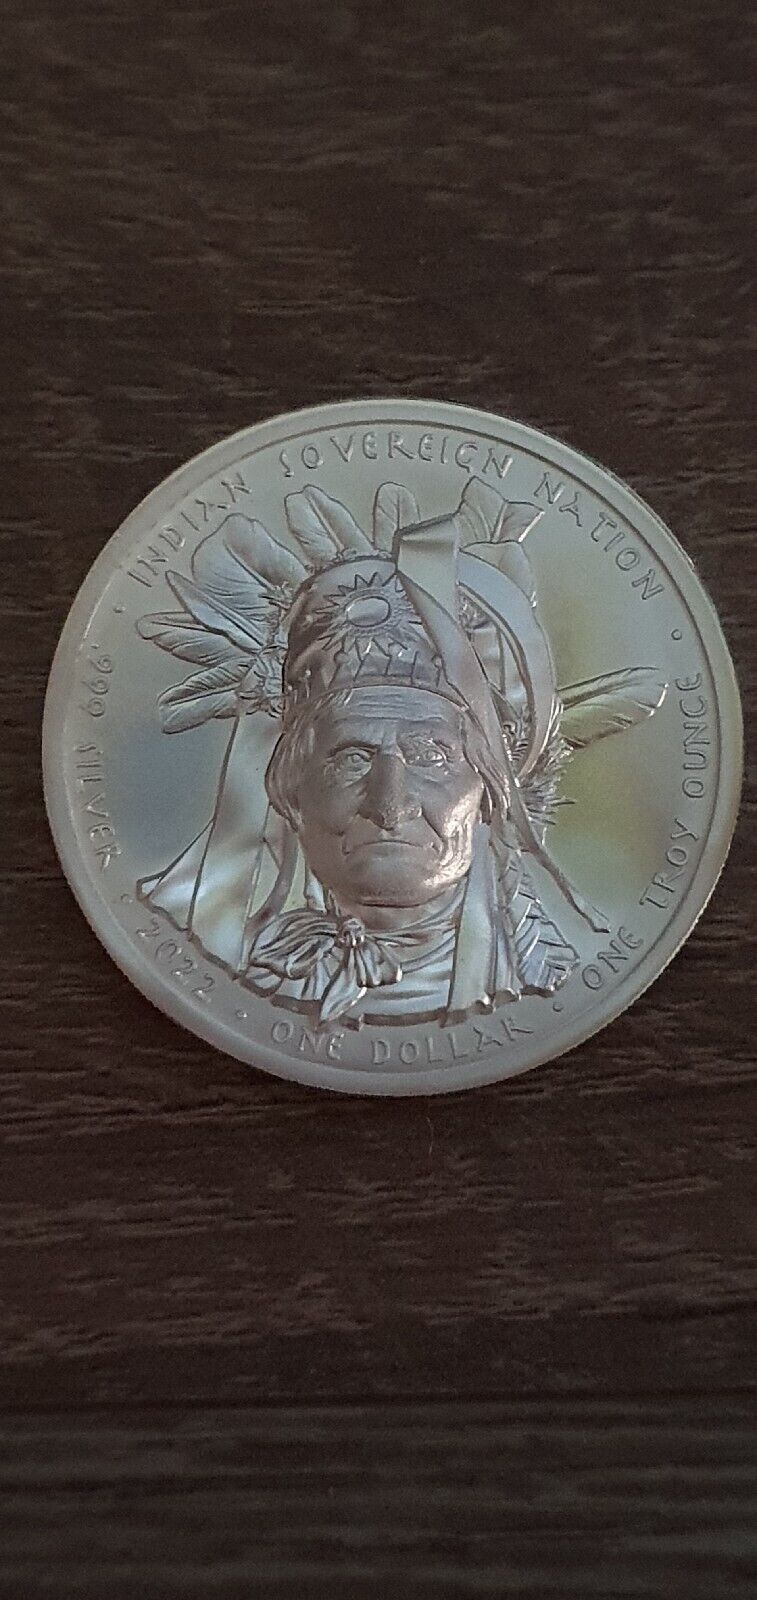 USA Silver Coin Geronimo 1oz. 2022, Ultra-High Relief 